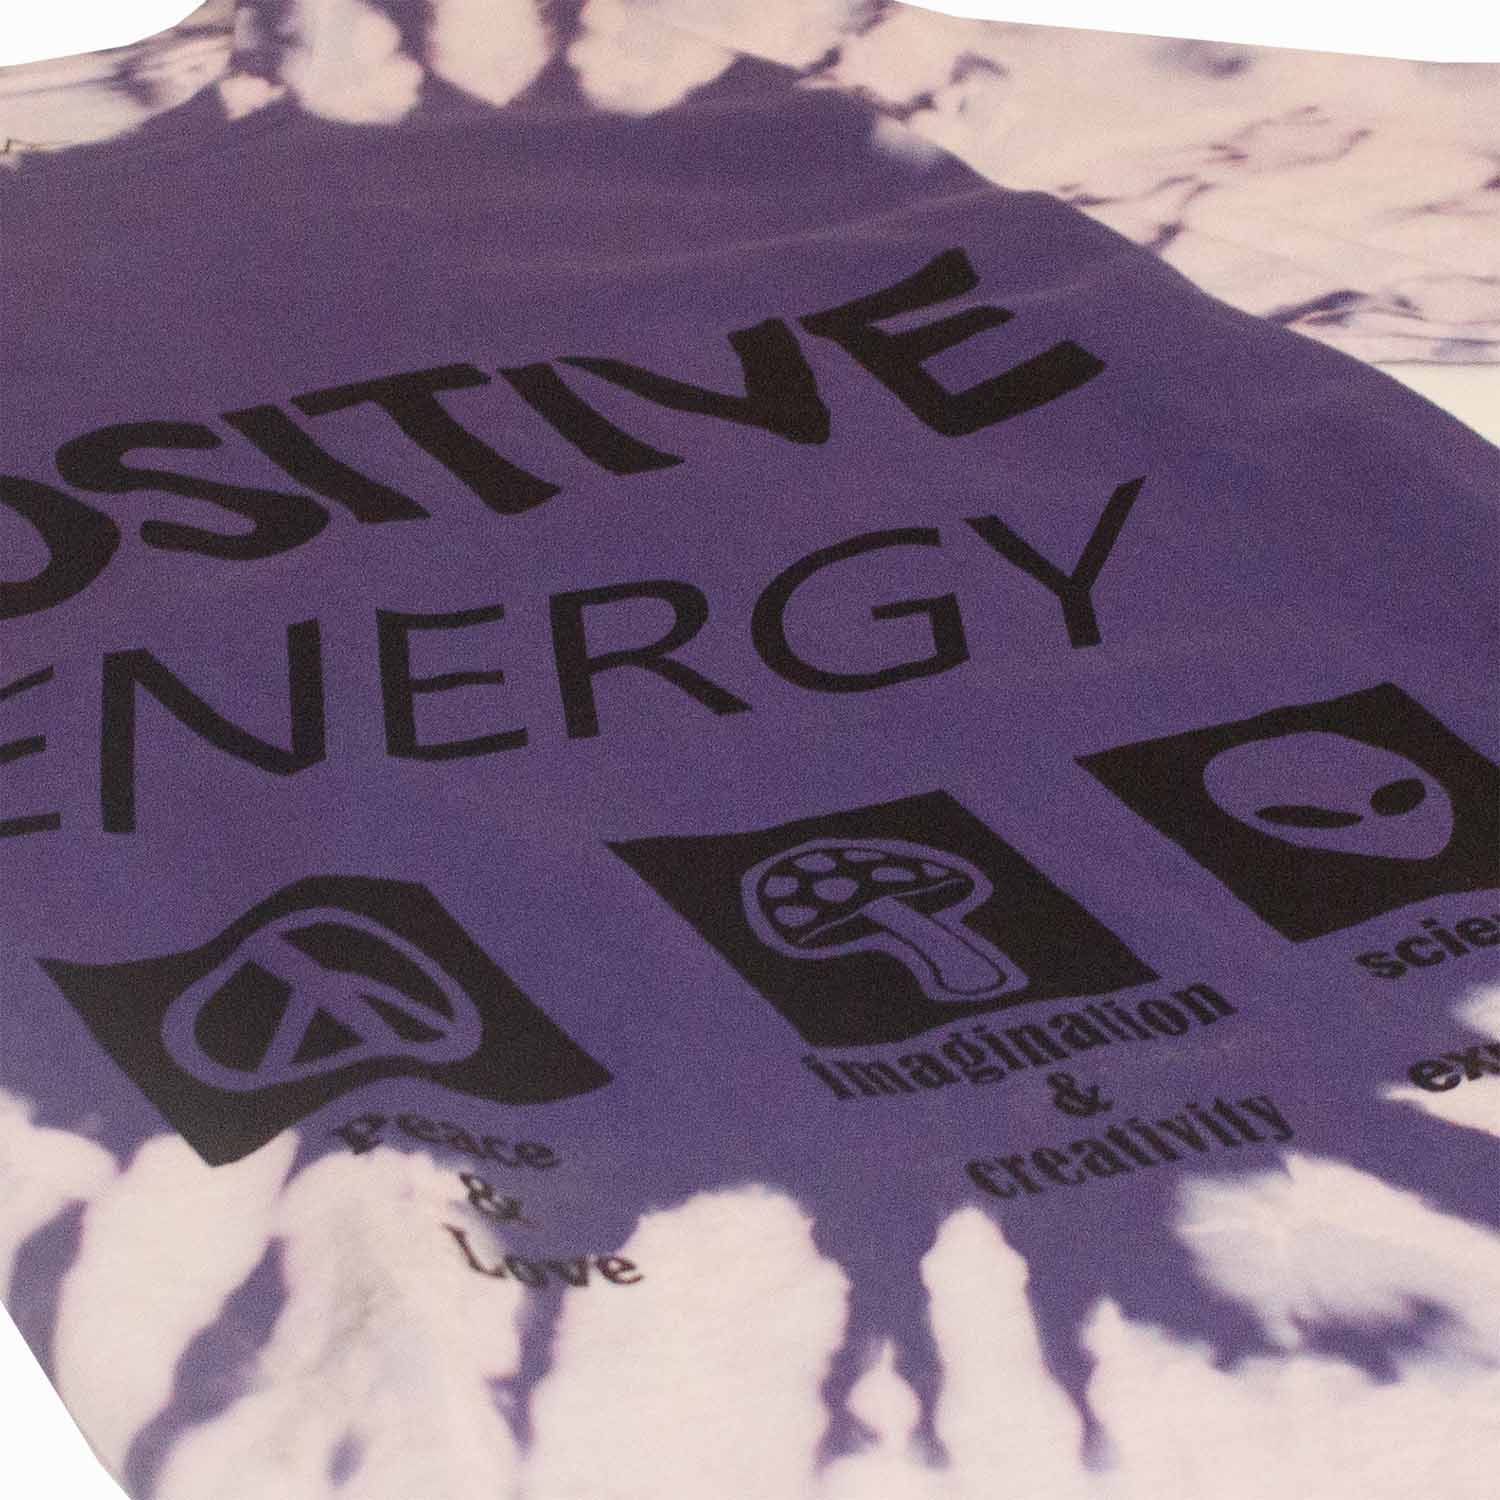 Positive Energy Tie-Dye Tee